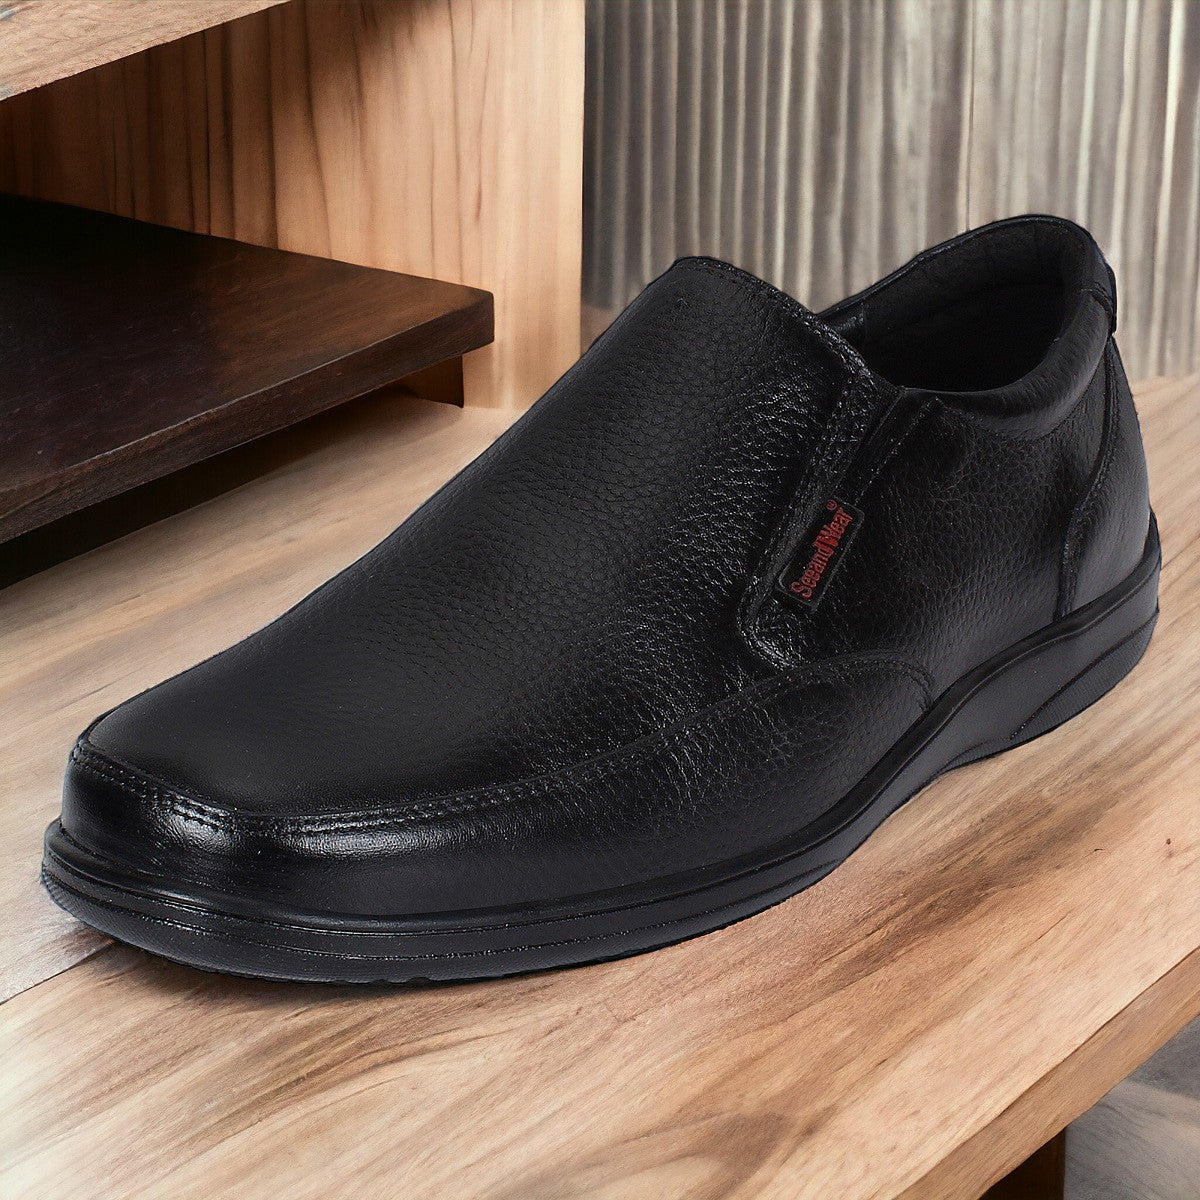 Formal Shoes for Men